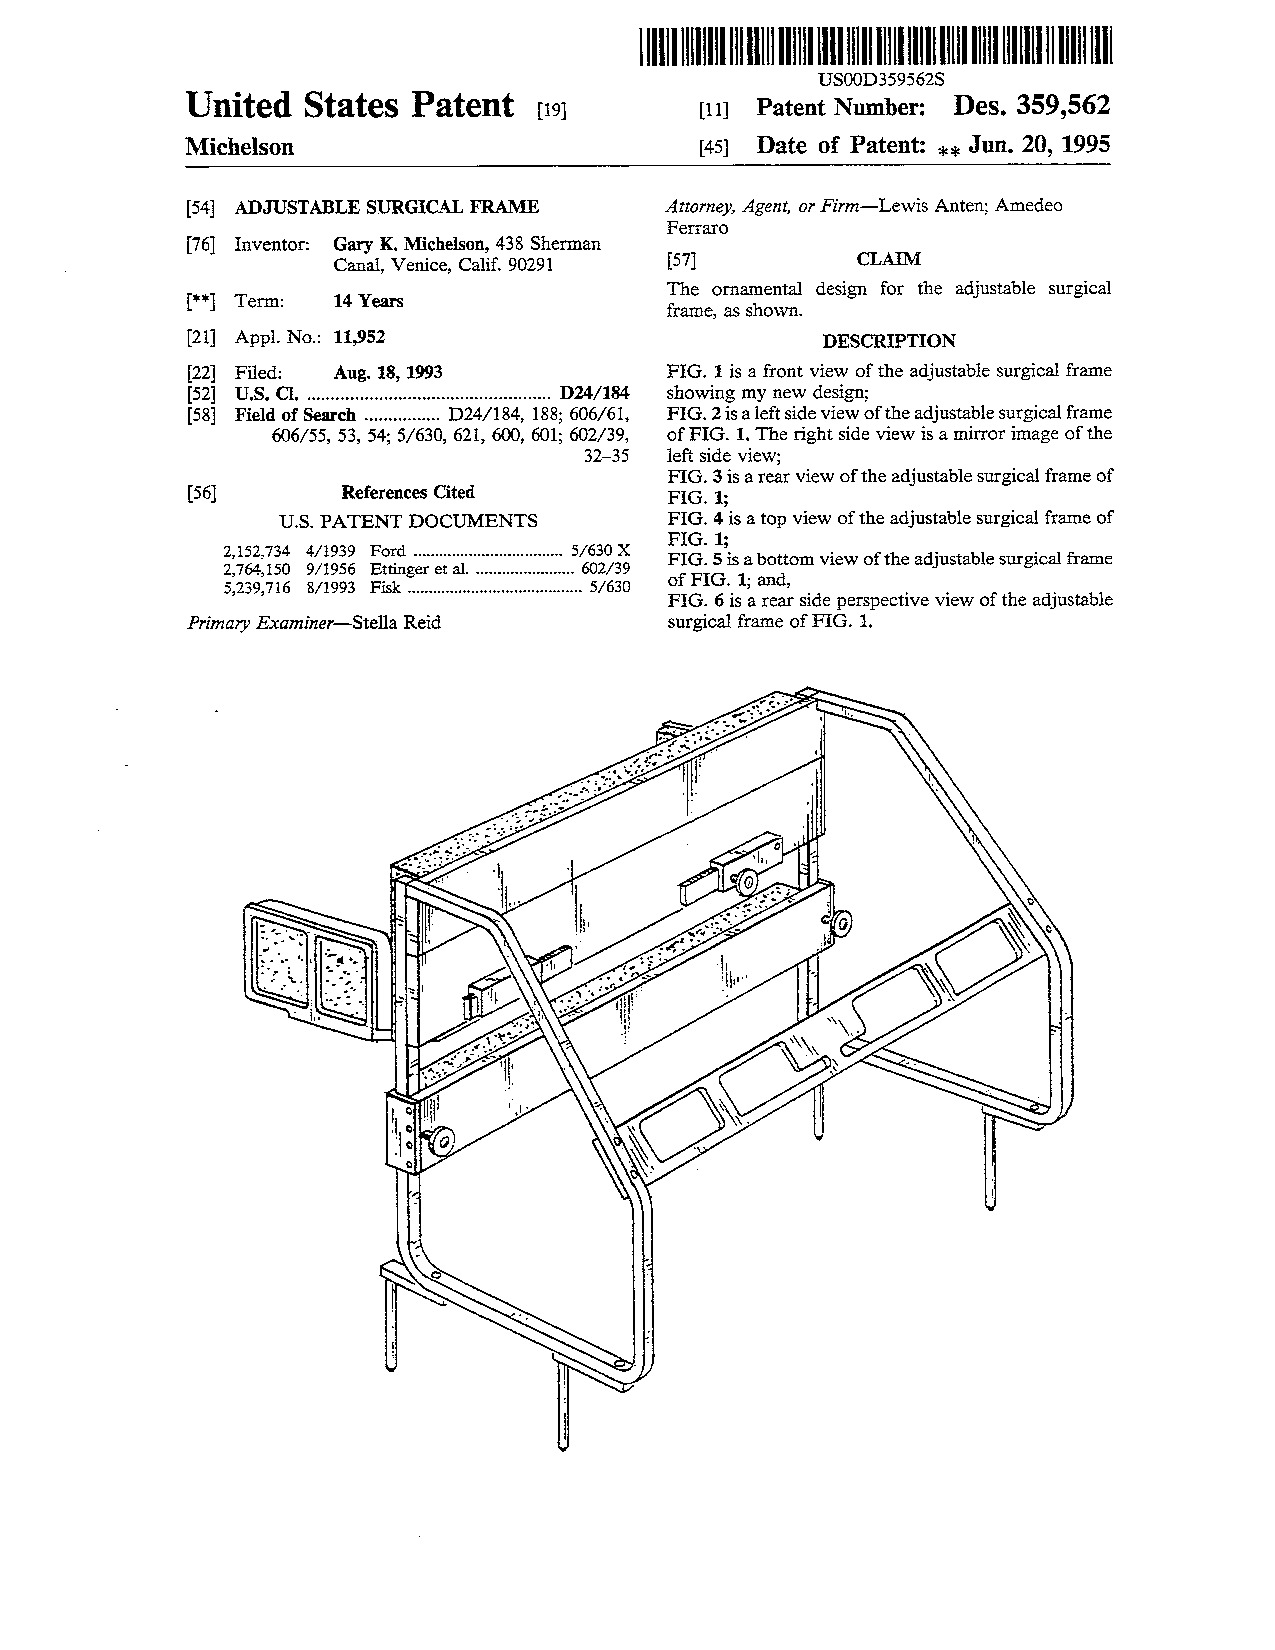 Adjustable surgical frame - Patent D359,562